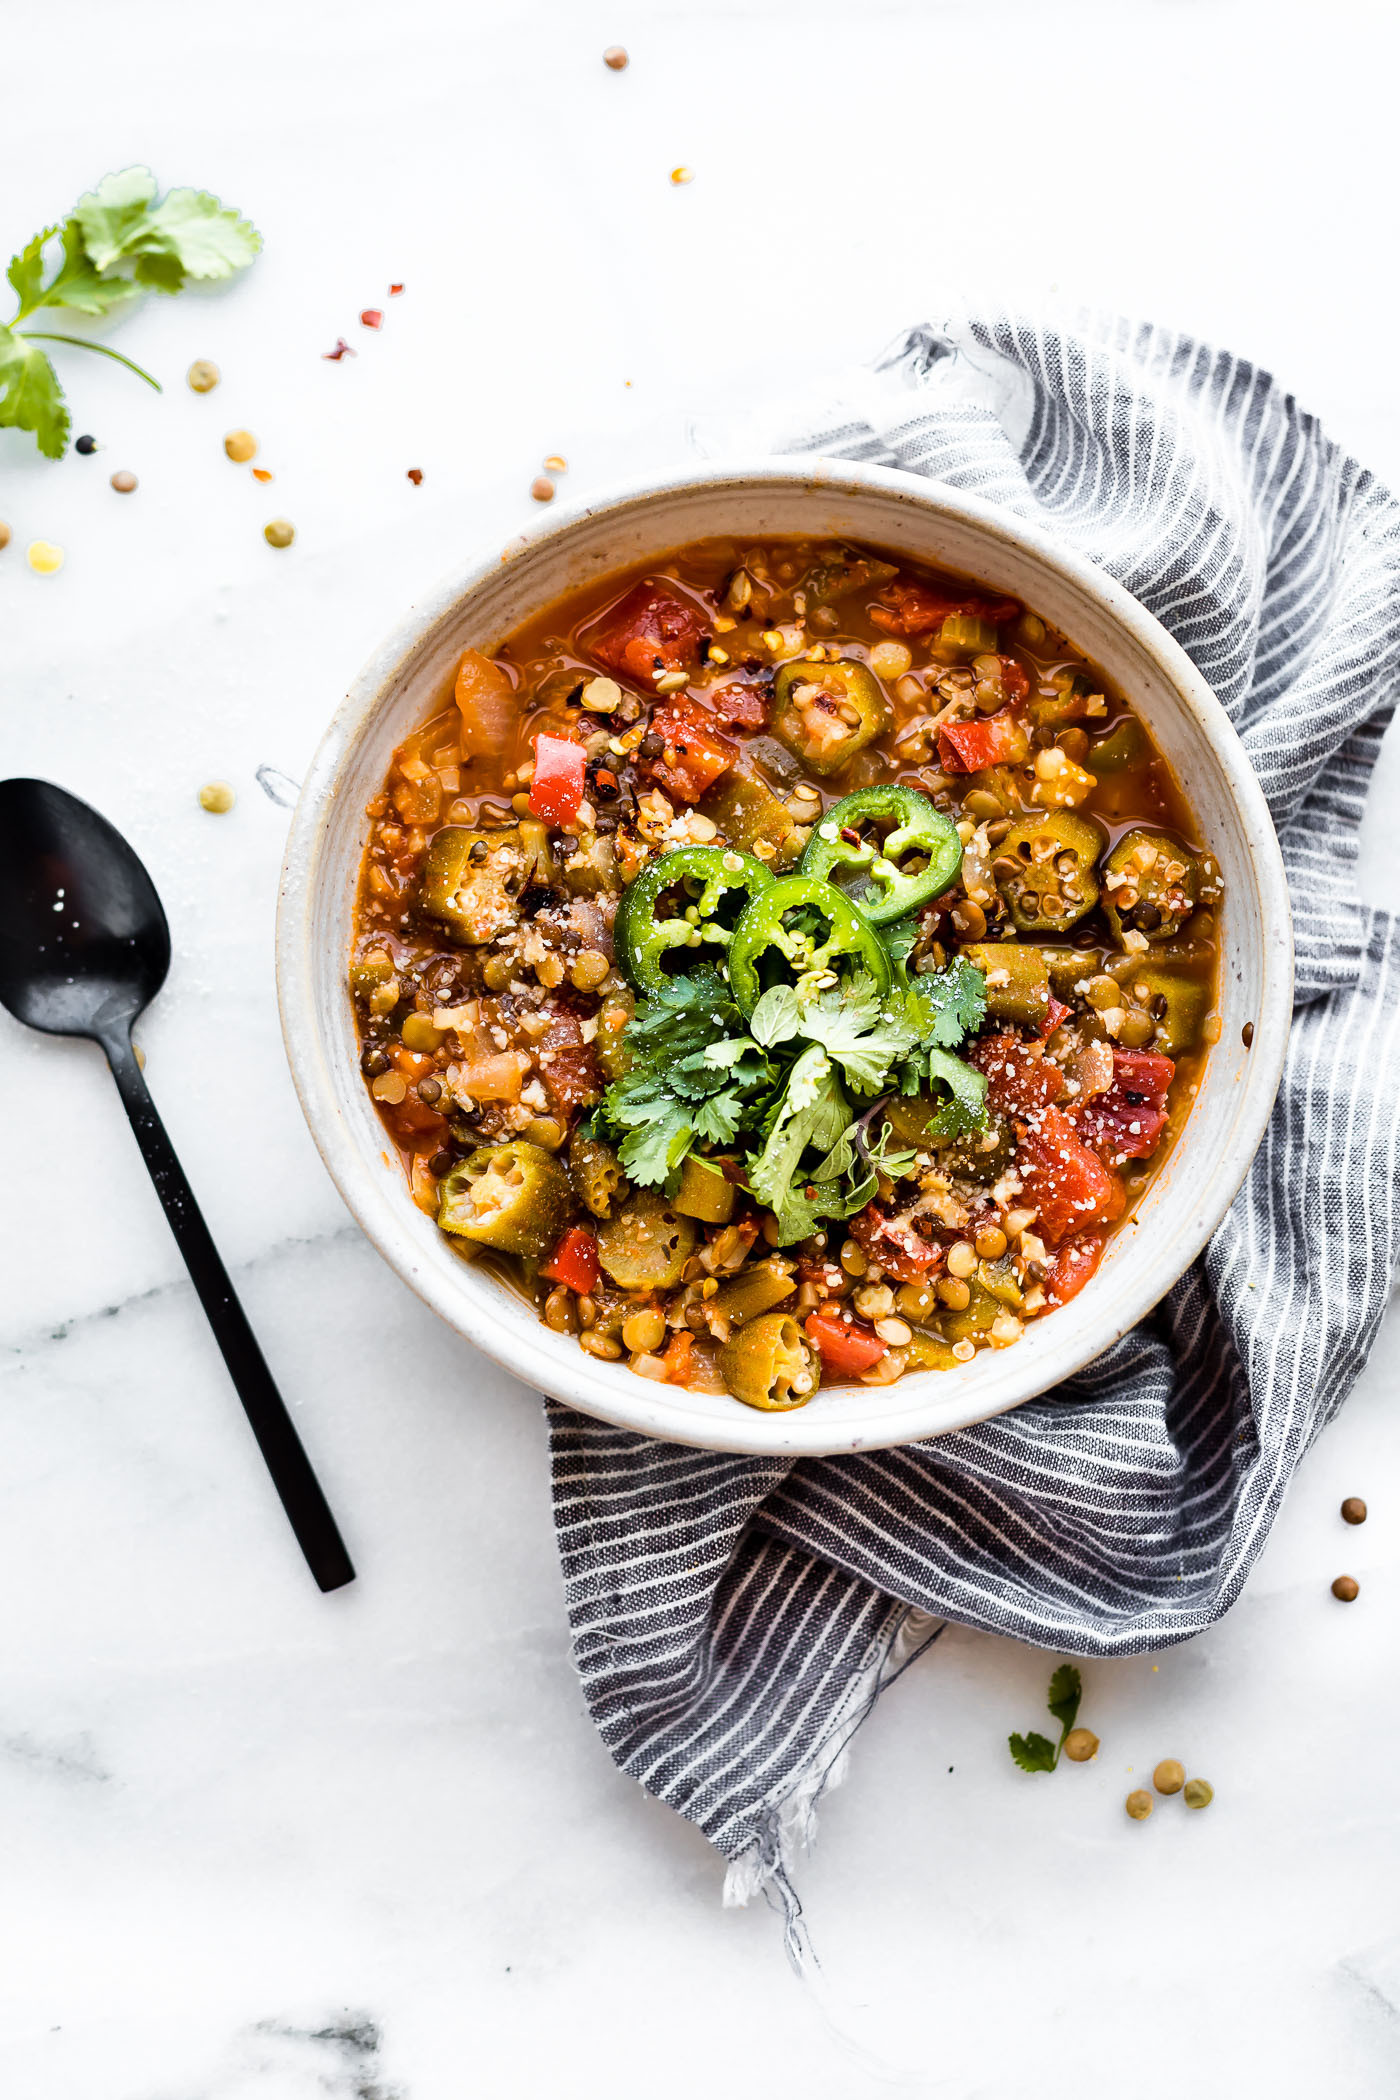 Healthy Instant Pot Recipes Vegetarian
 Instant Pot Lentil Gumbo